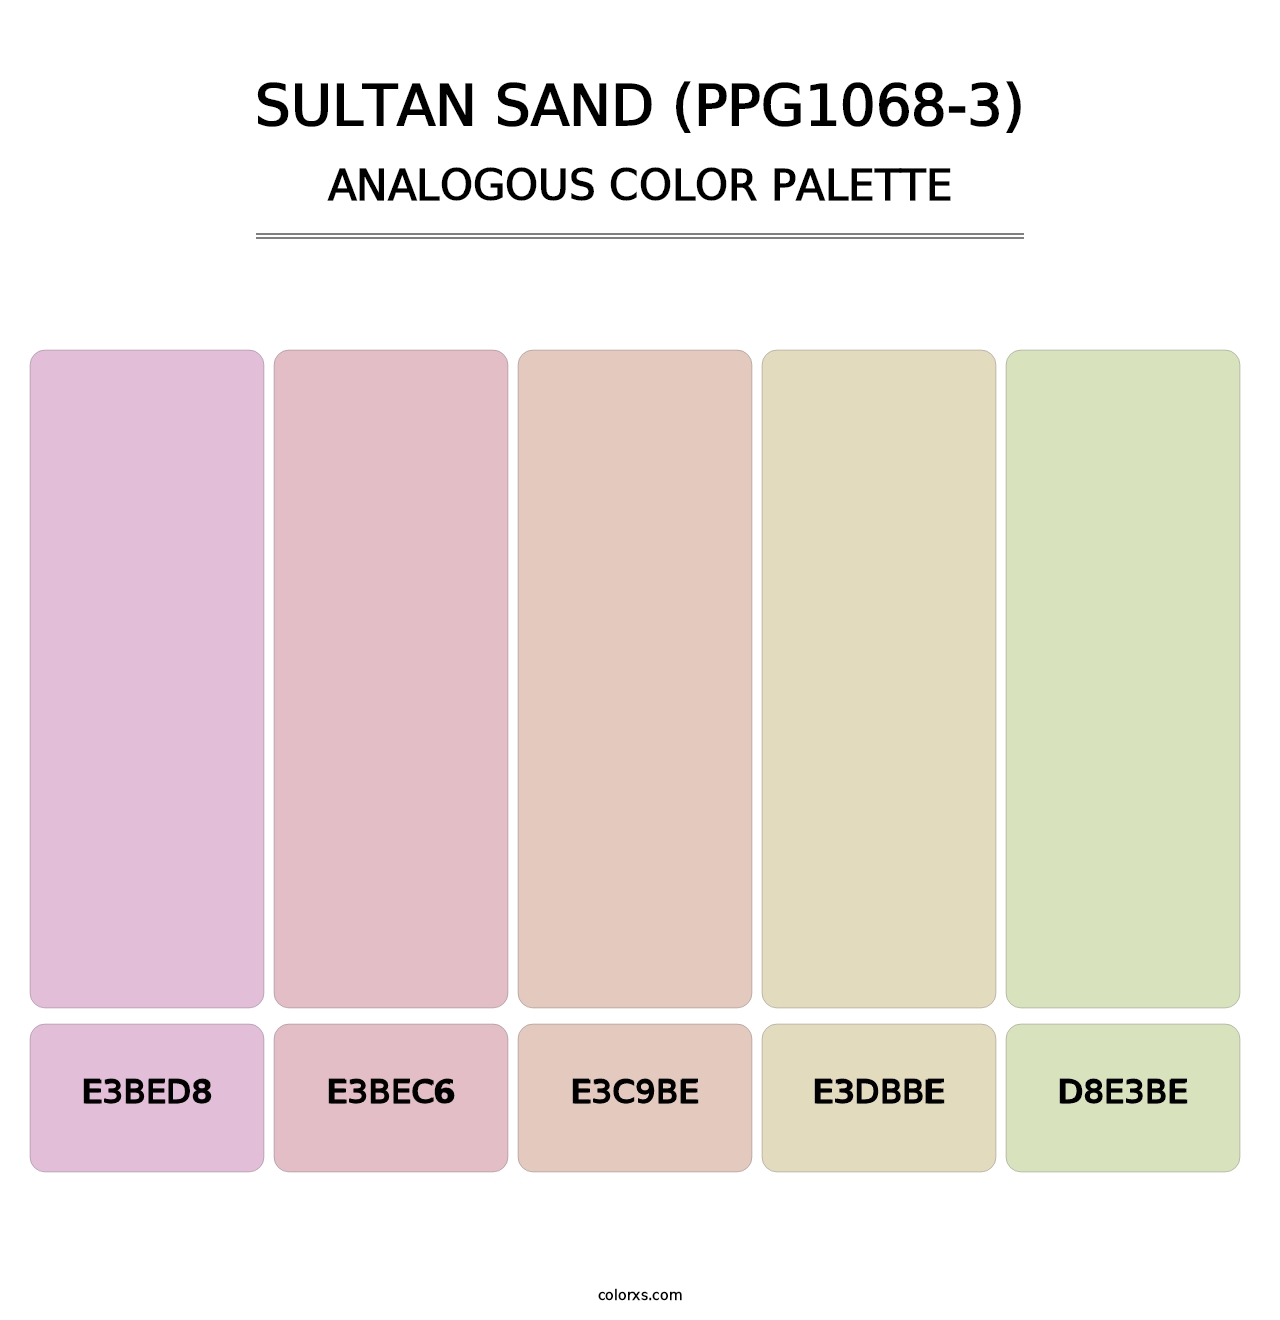 Sultan Sand (PPG1068-3) - Analogous Color Palette